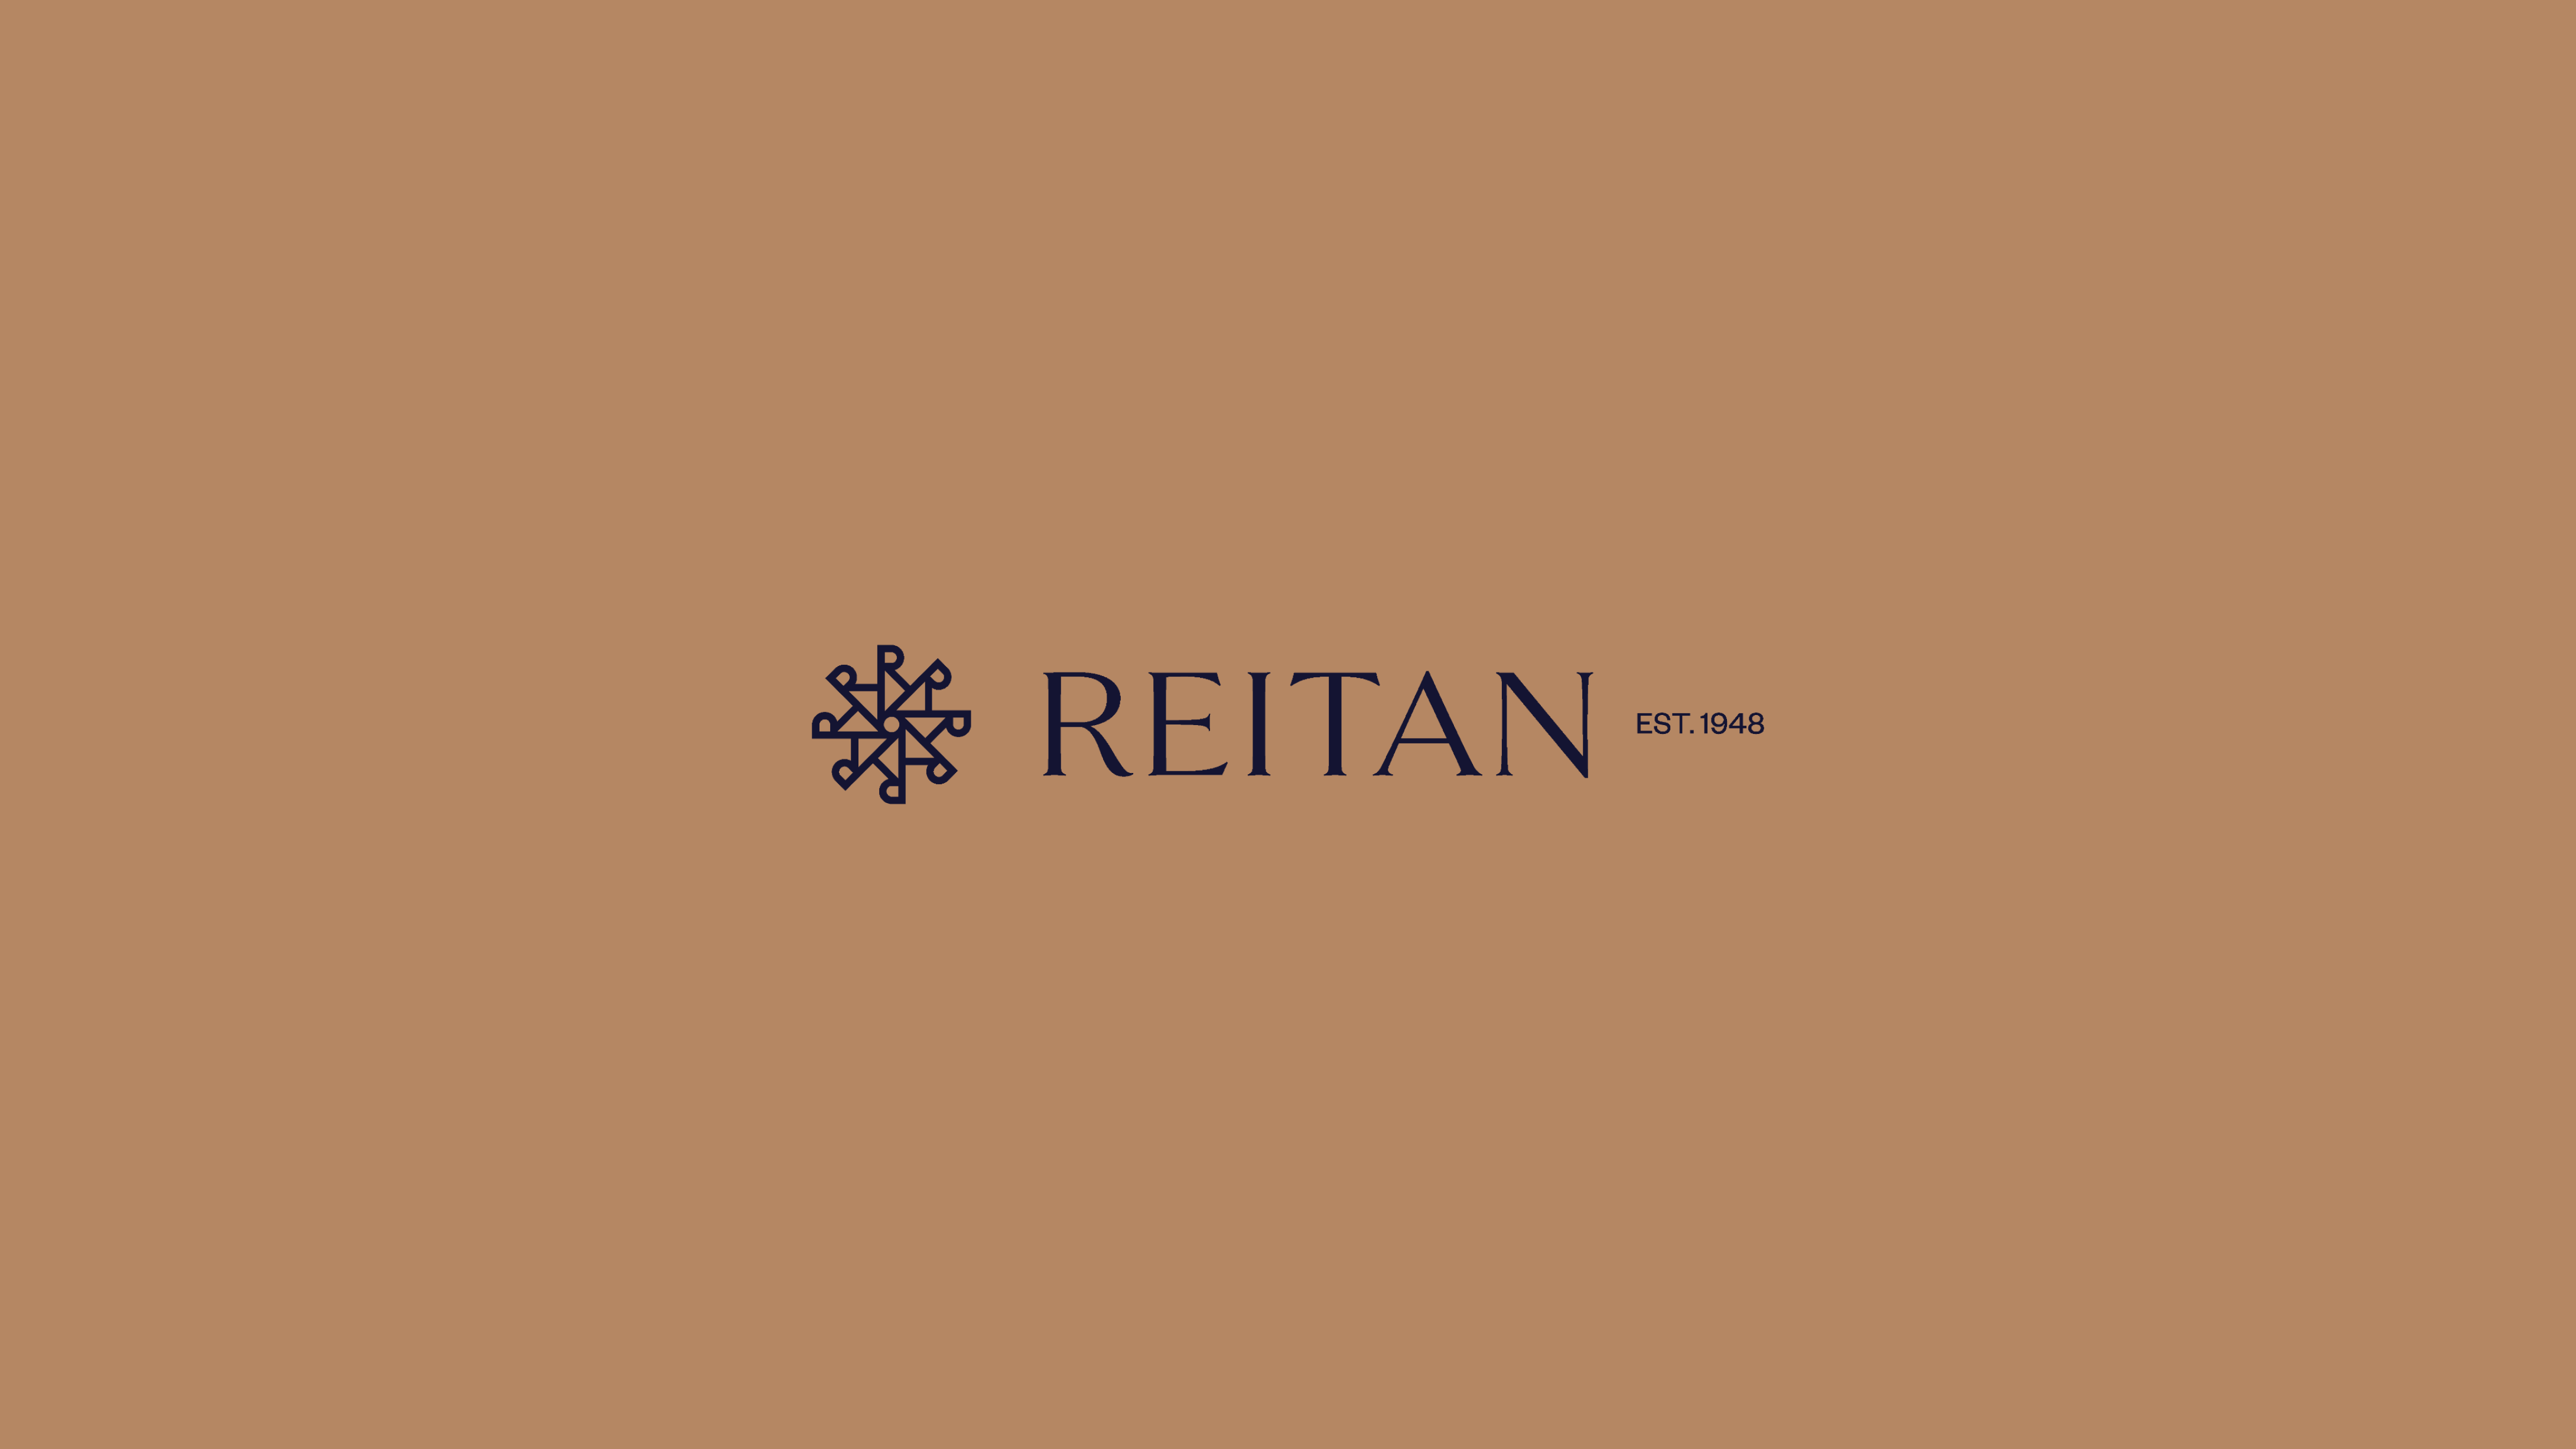 Reitan secondary logo